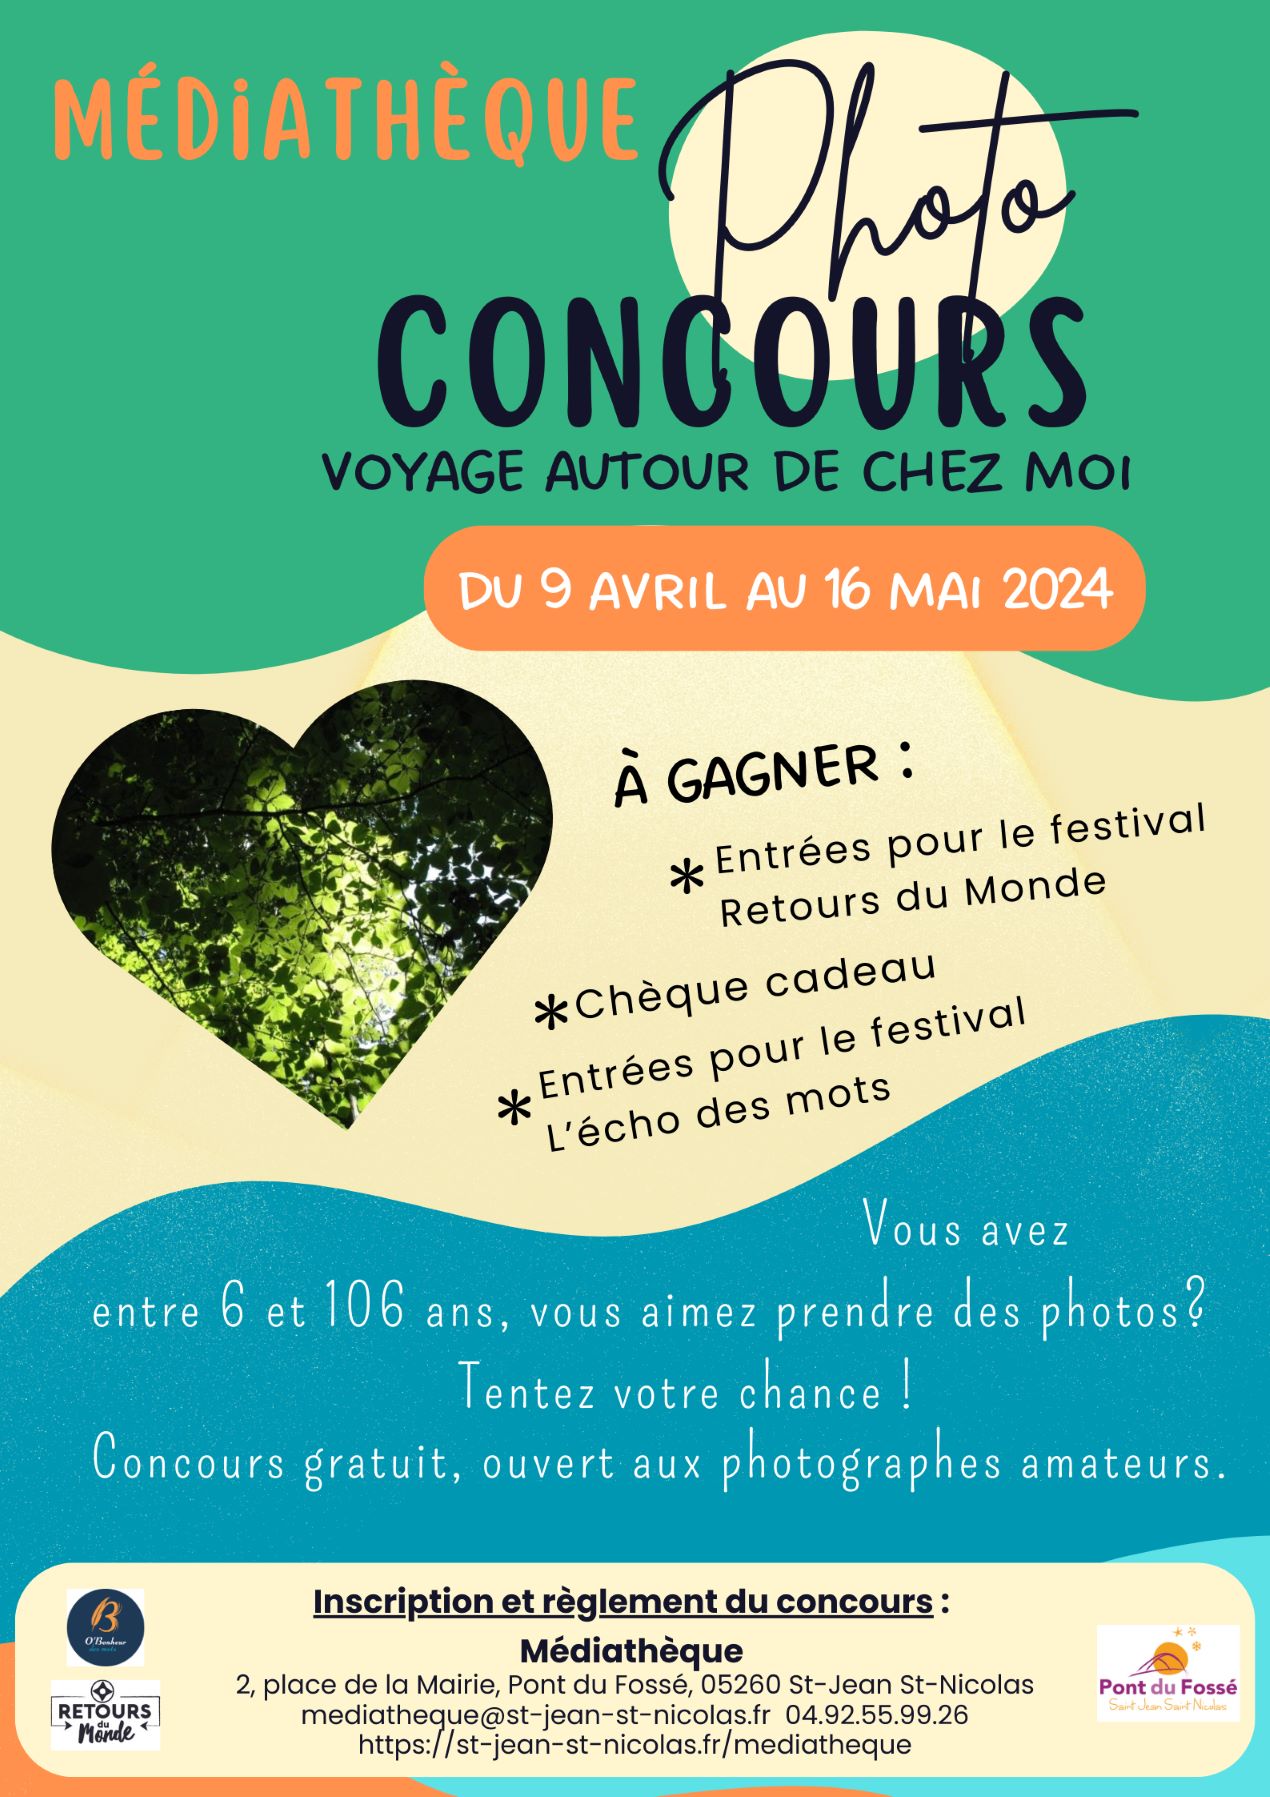 You are currently viewing Concours photo : voyage autour de chez soi